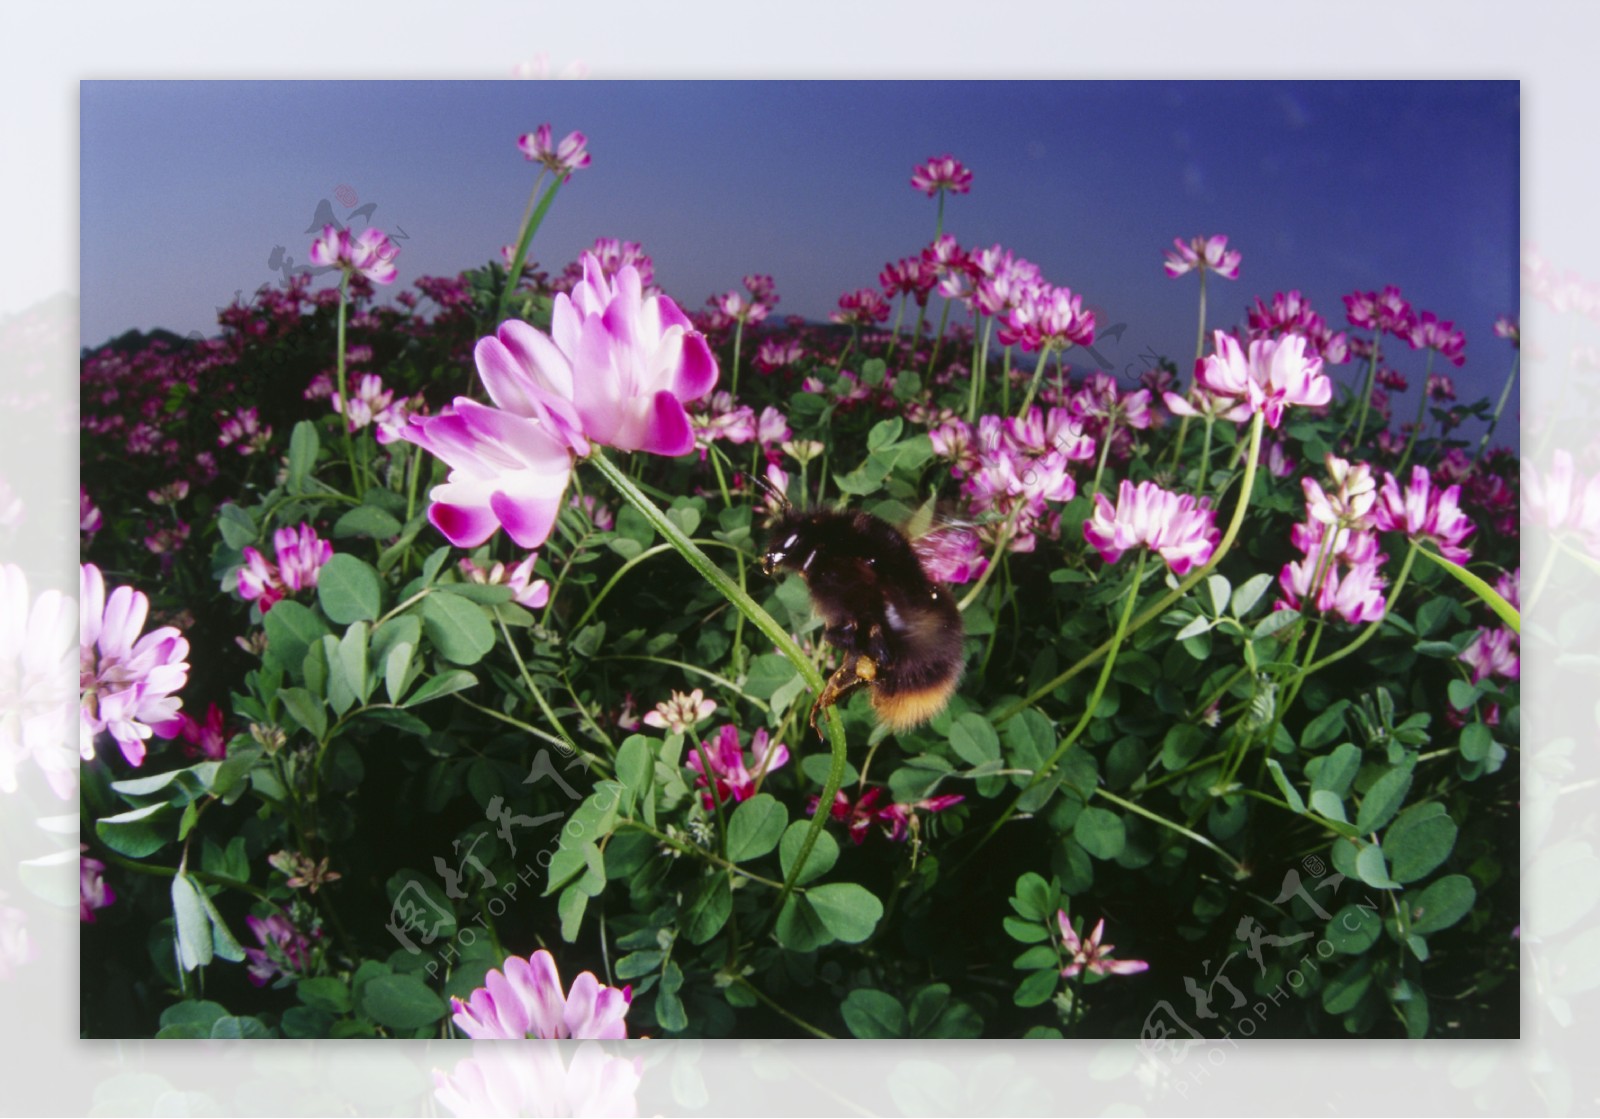 花海里采蜜的蜜蜂图片